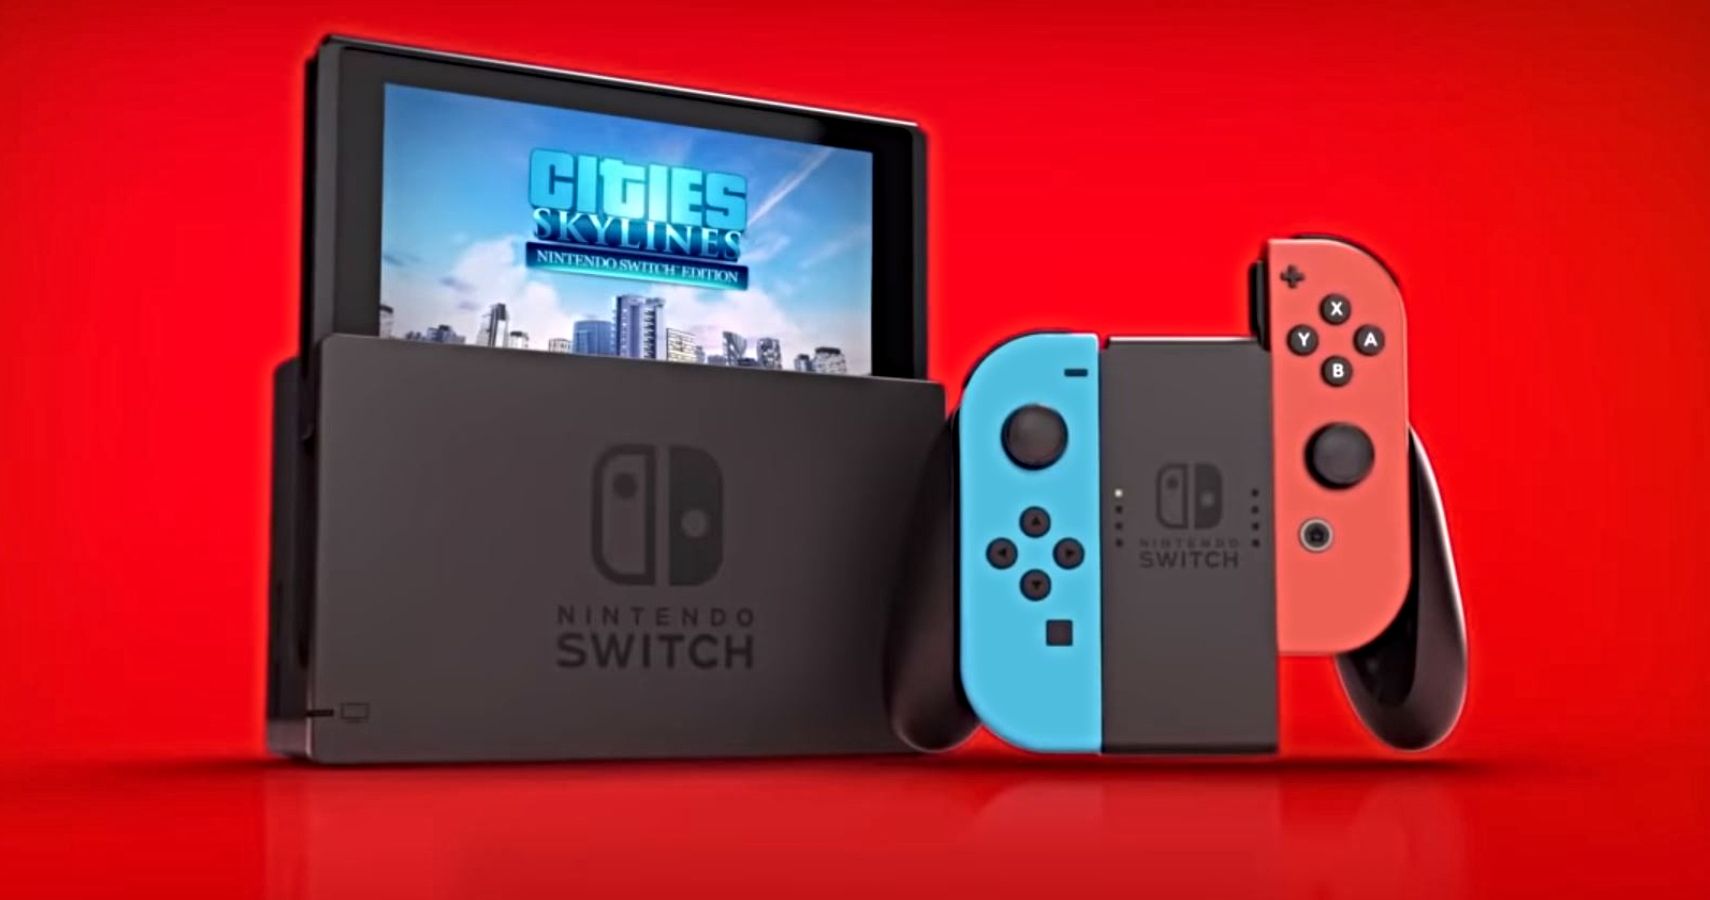 Skyline nintendo switch. Cities Skylines Nintendo Switch. DLC Nintendo Switch. Нинтендо свитч Ситис Скайлайн. Cities: Skylines - Nintendo Switch Edition.